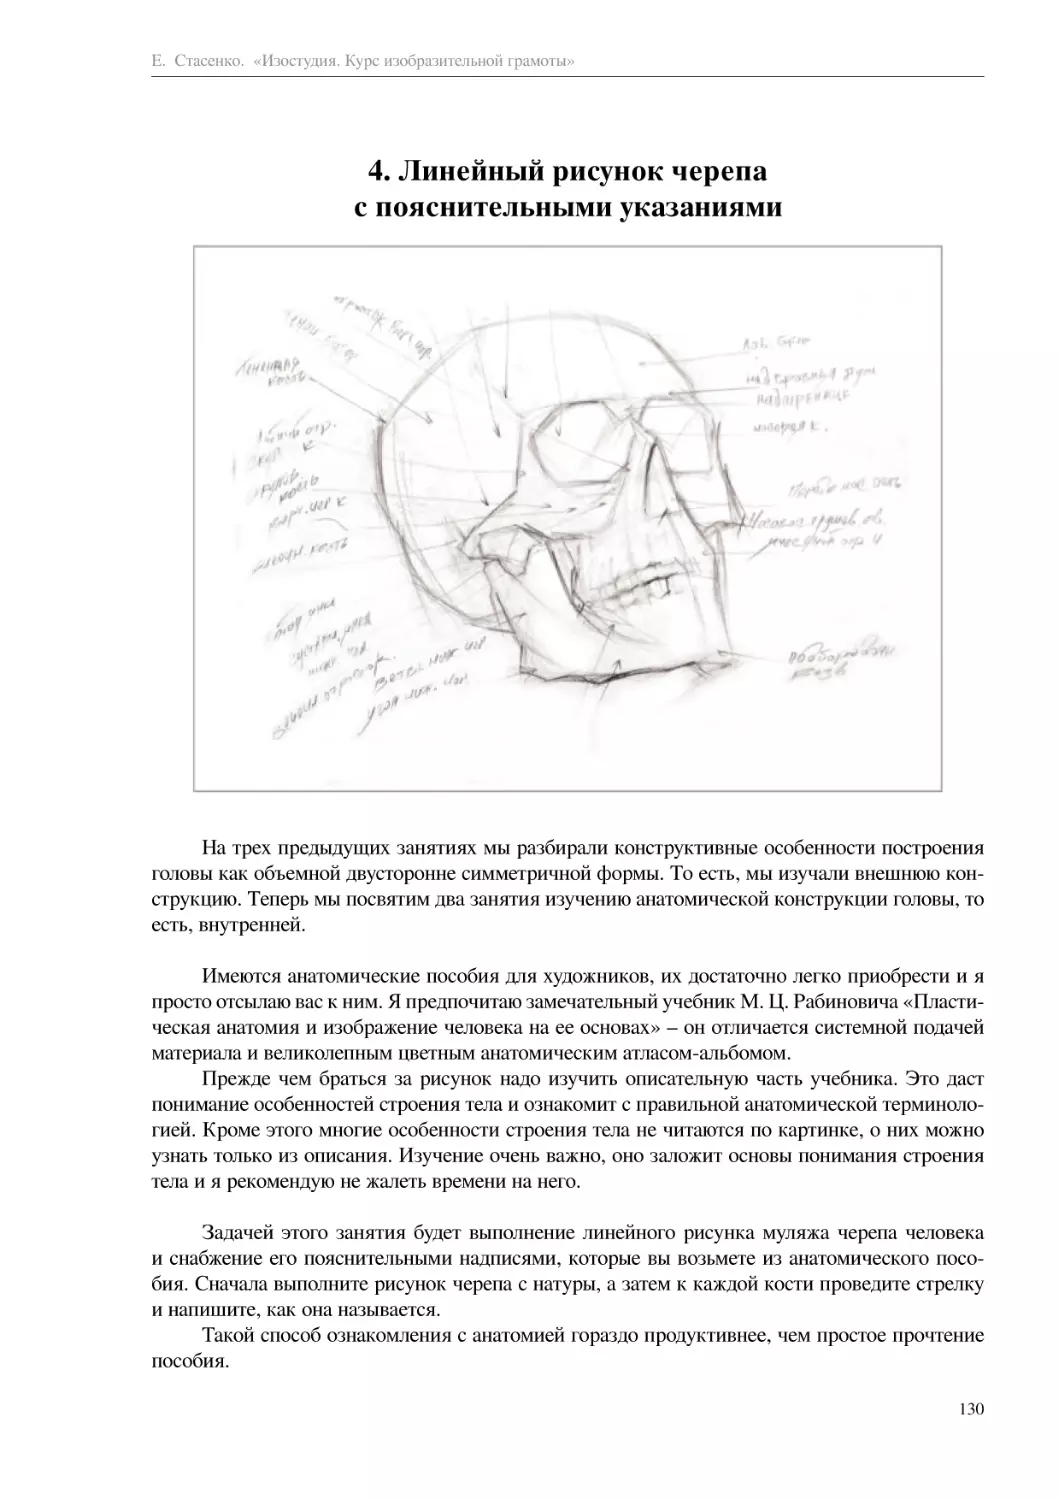 4. Линейный рисунок черепа с пояснительными указаниями